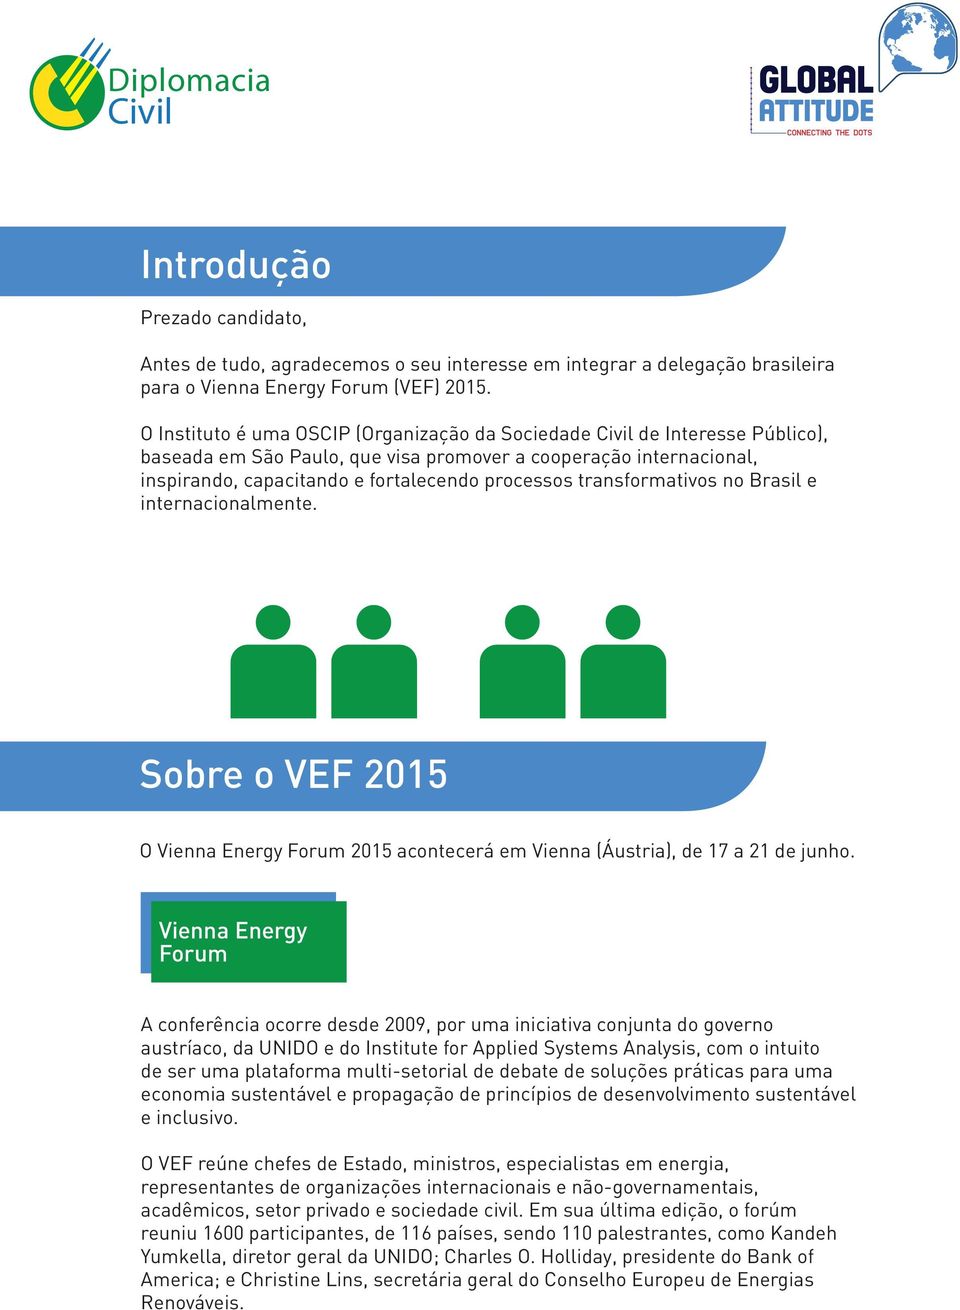 transformativos no Brasil e internacionalmente. Sobre o VEF 2015 O Vienna Energy Forum 2015 acontecerá em Vienna (Áustria), de 17 a 21 de junho.